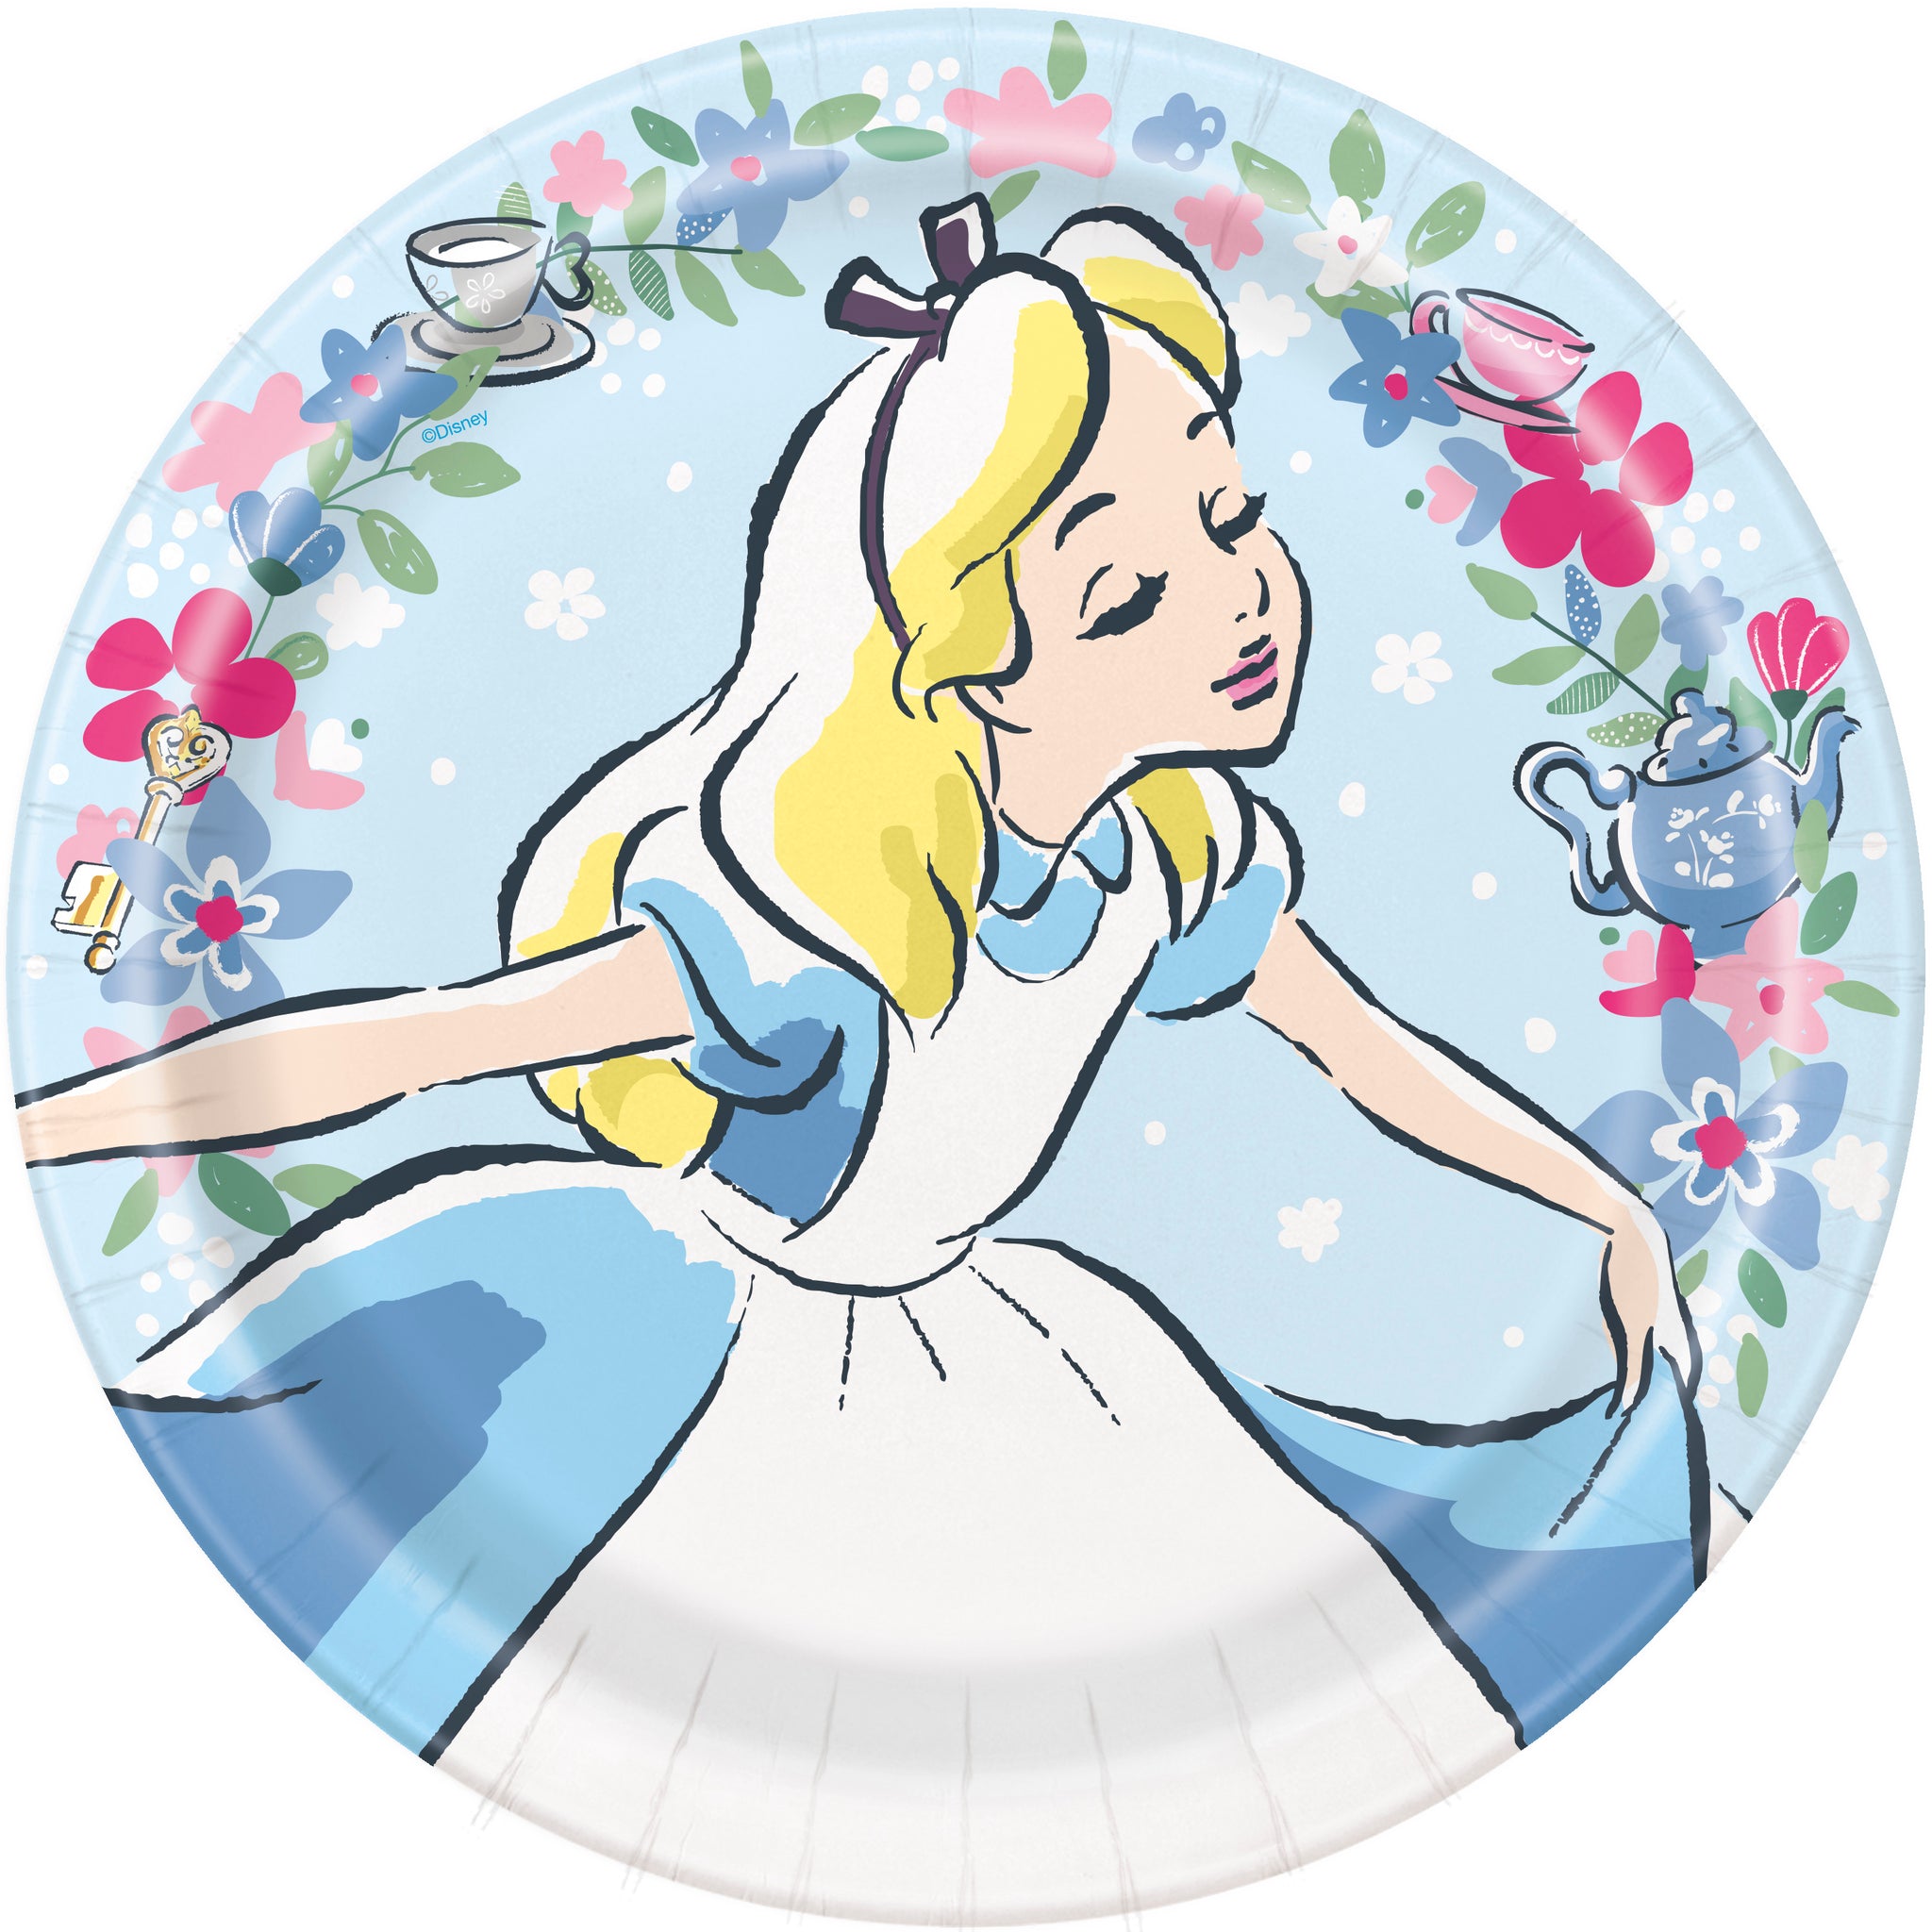 Alice in Wonderland Round 9" Dinner Plates, 8ct